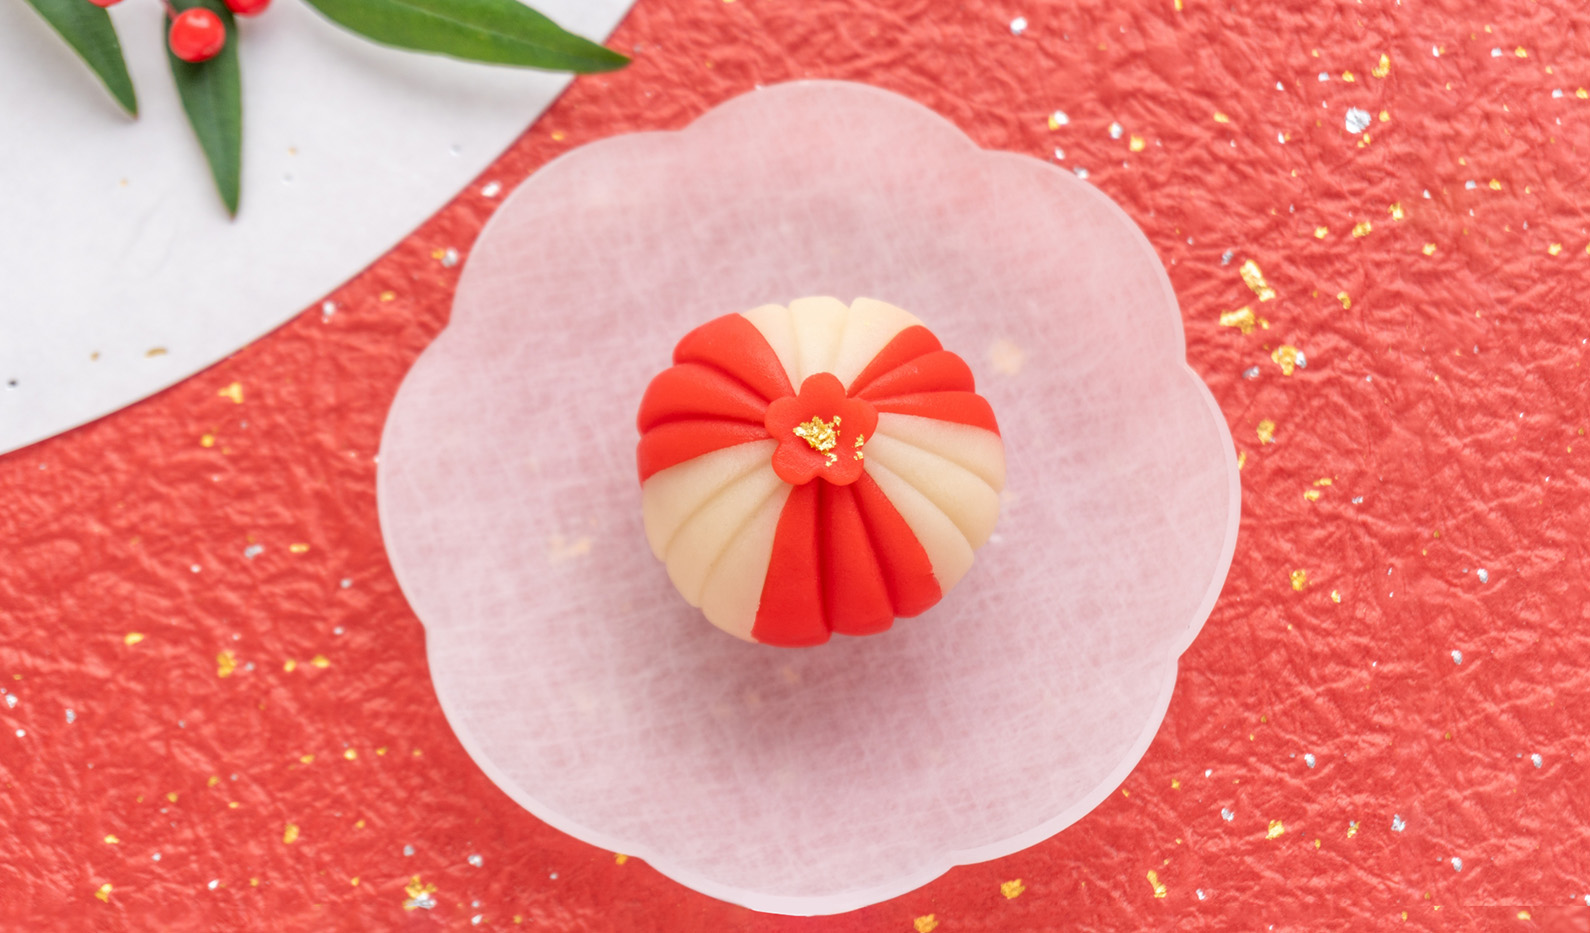 赤い和紙の上に置かれた白い皿の上に紅白の和菓子が乗っている画像